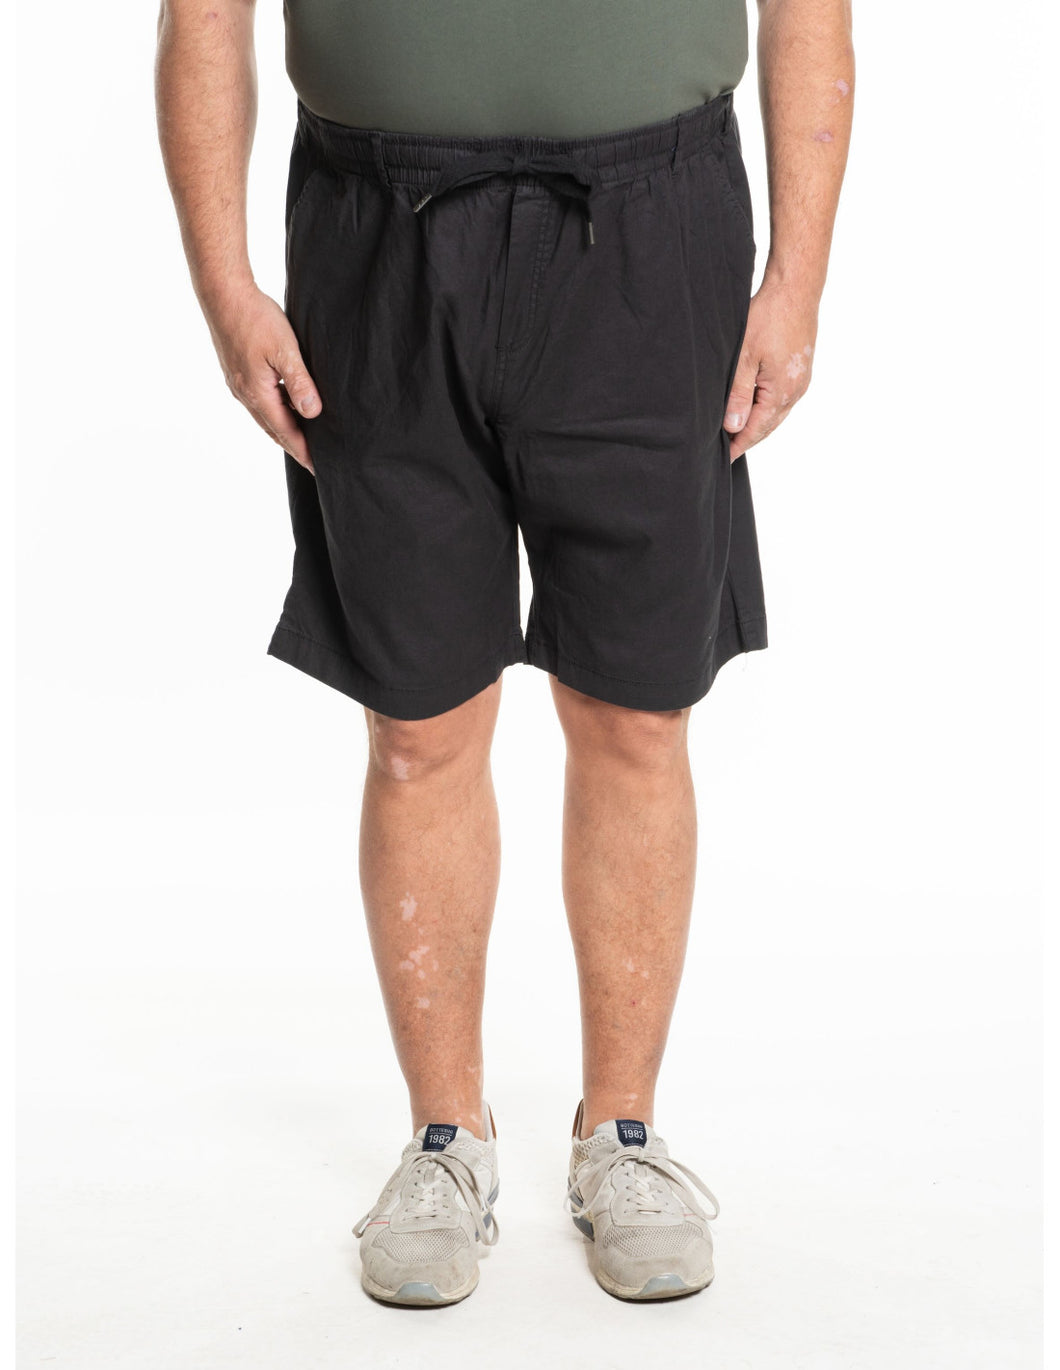 Kratke hlače EASY by MAXFORT E2213 mešani lan - modra črna in musk - velikost 2XL do 8XL promocijska cena